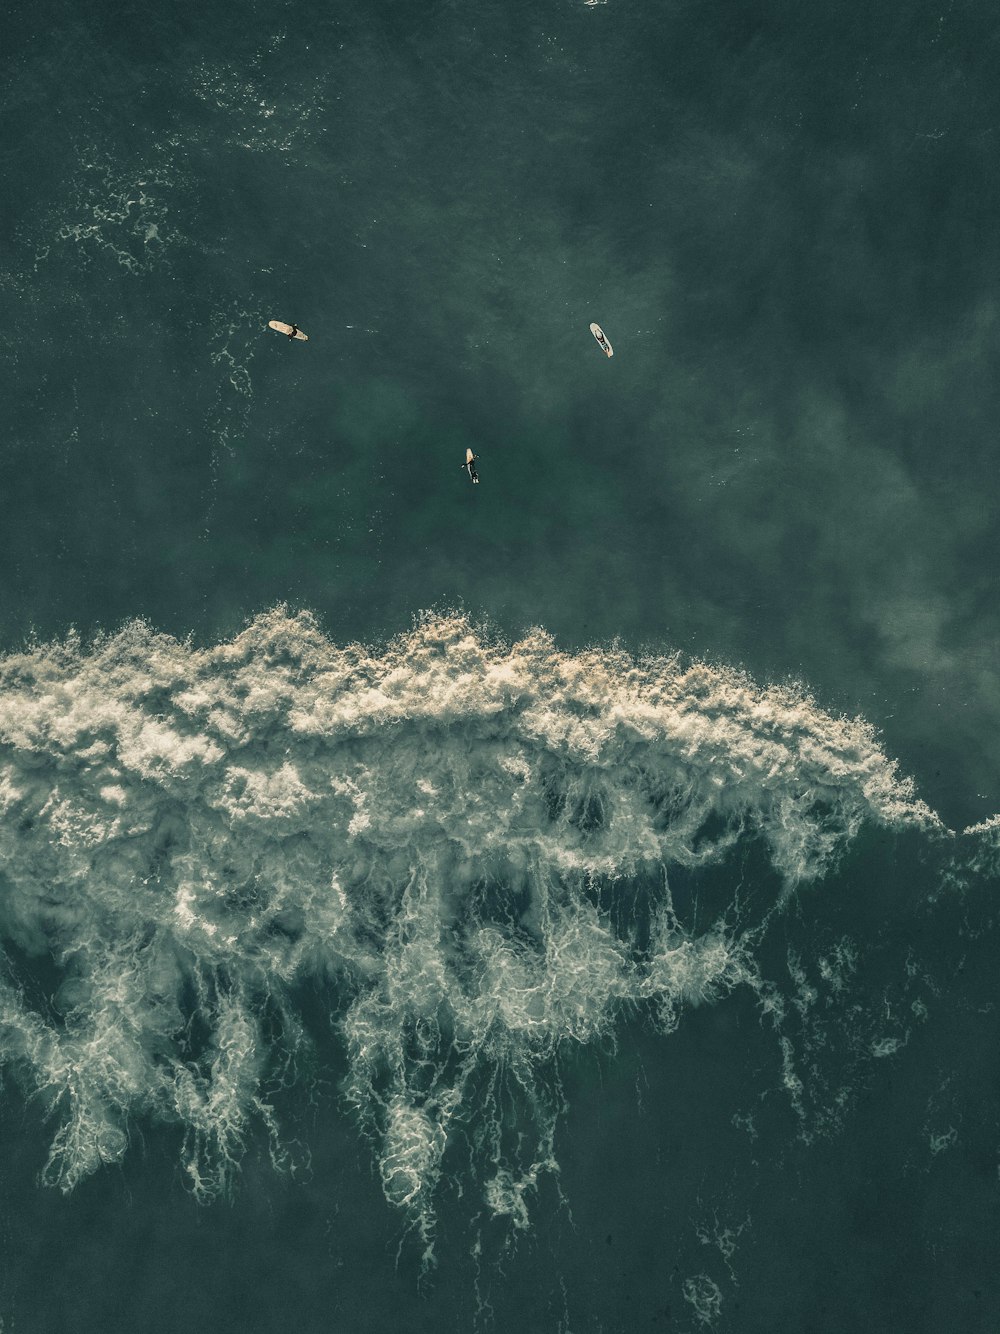 Fotografia a volo d'uccello di surfisti sullo specchio d'acqua